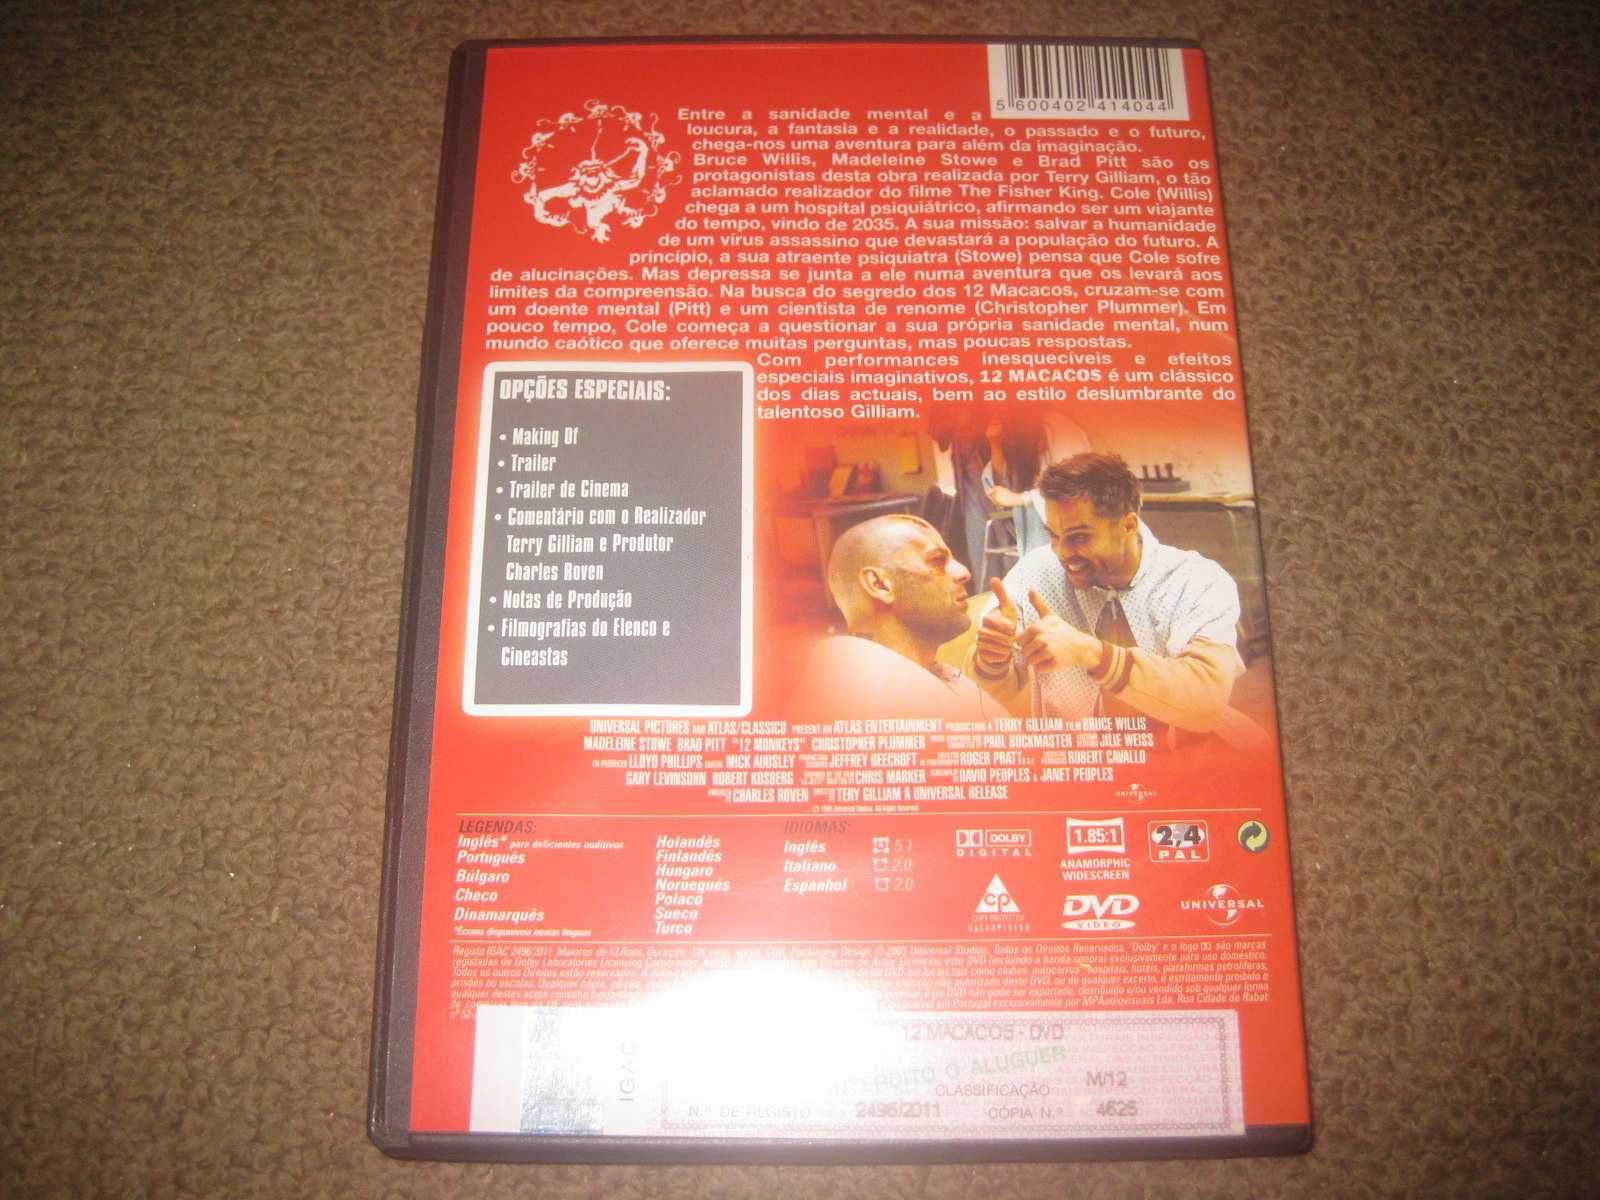 DVD "12 Macacos" com Bruce Willis